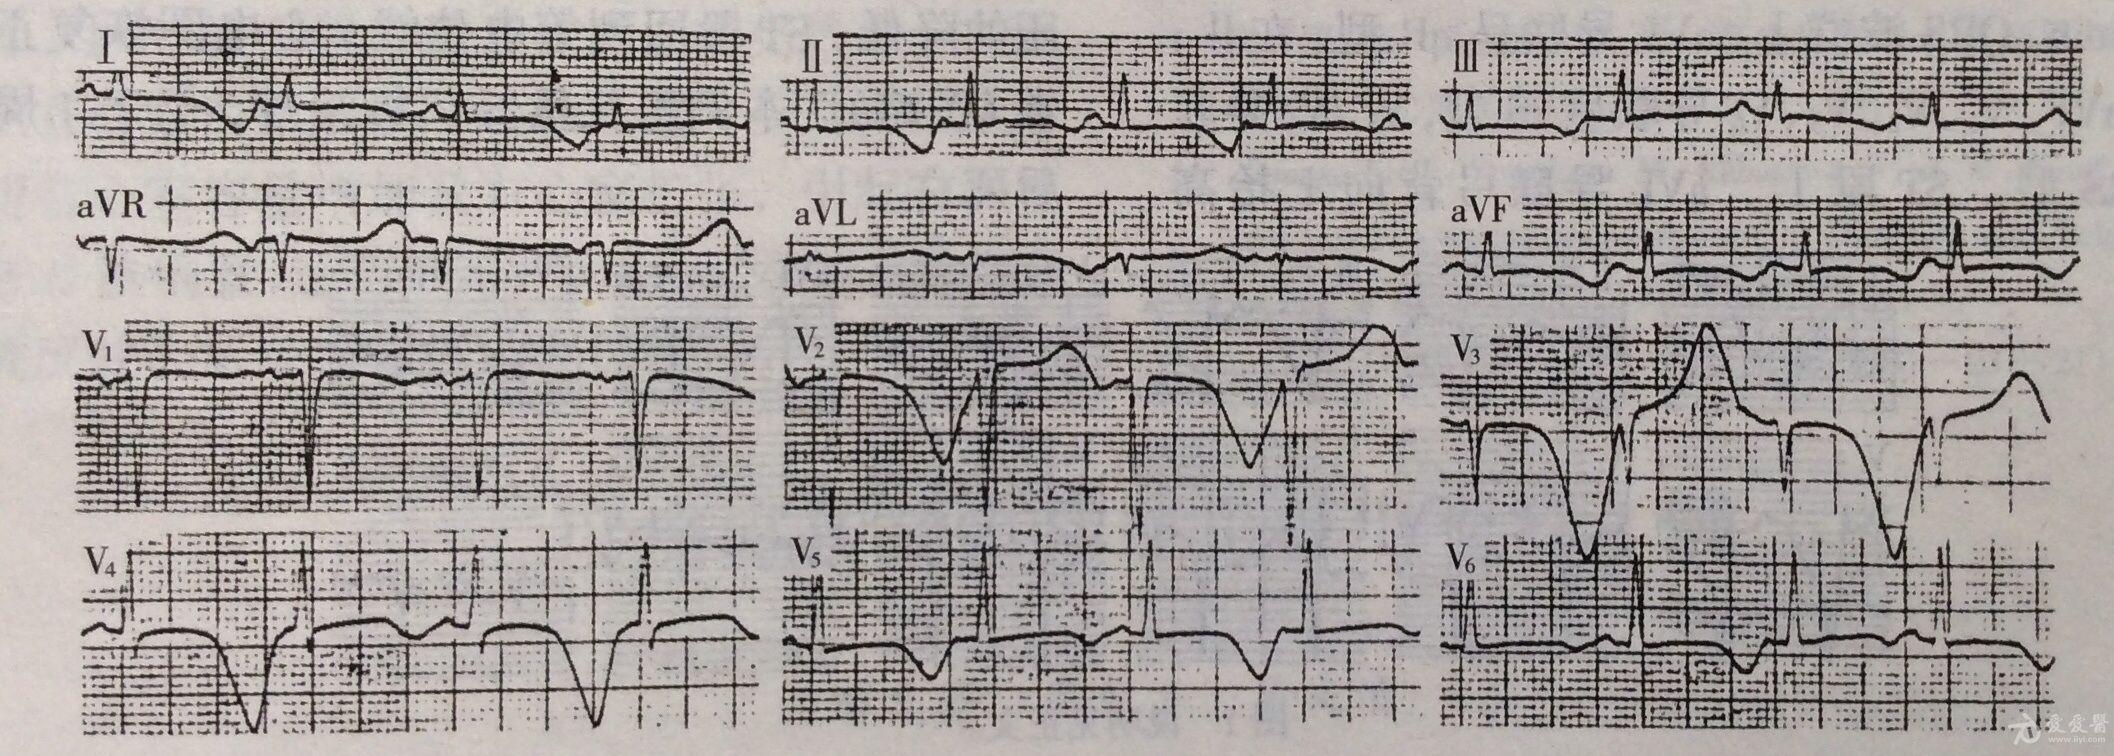 低钙血症心电图表现图片